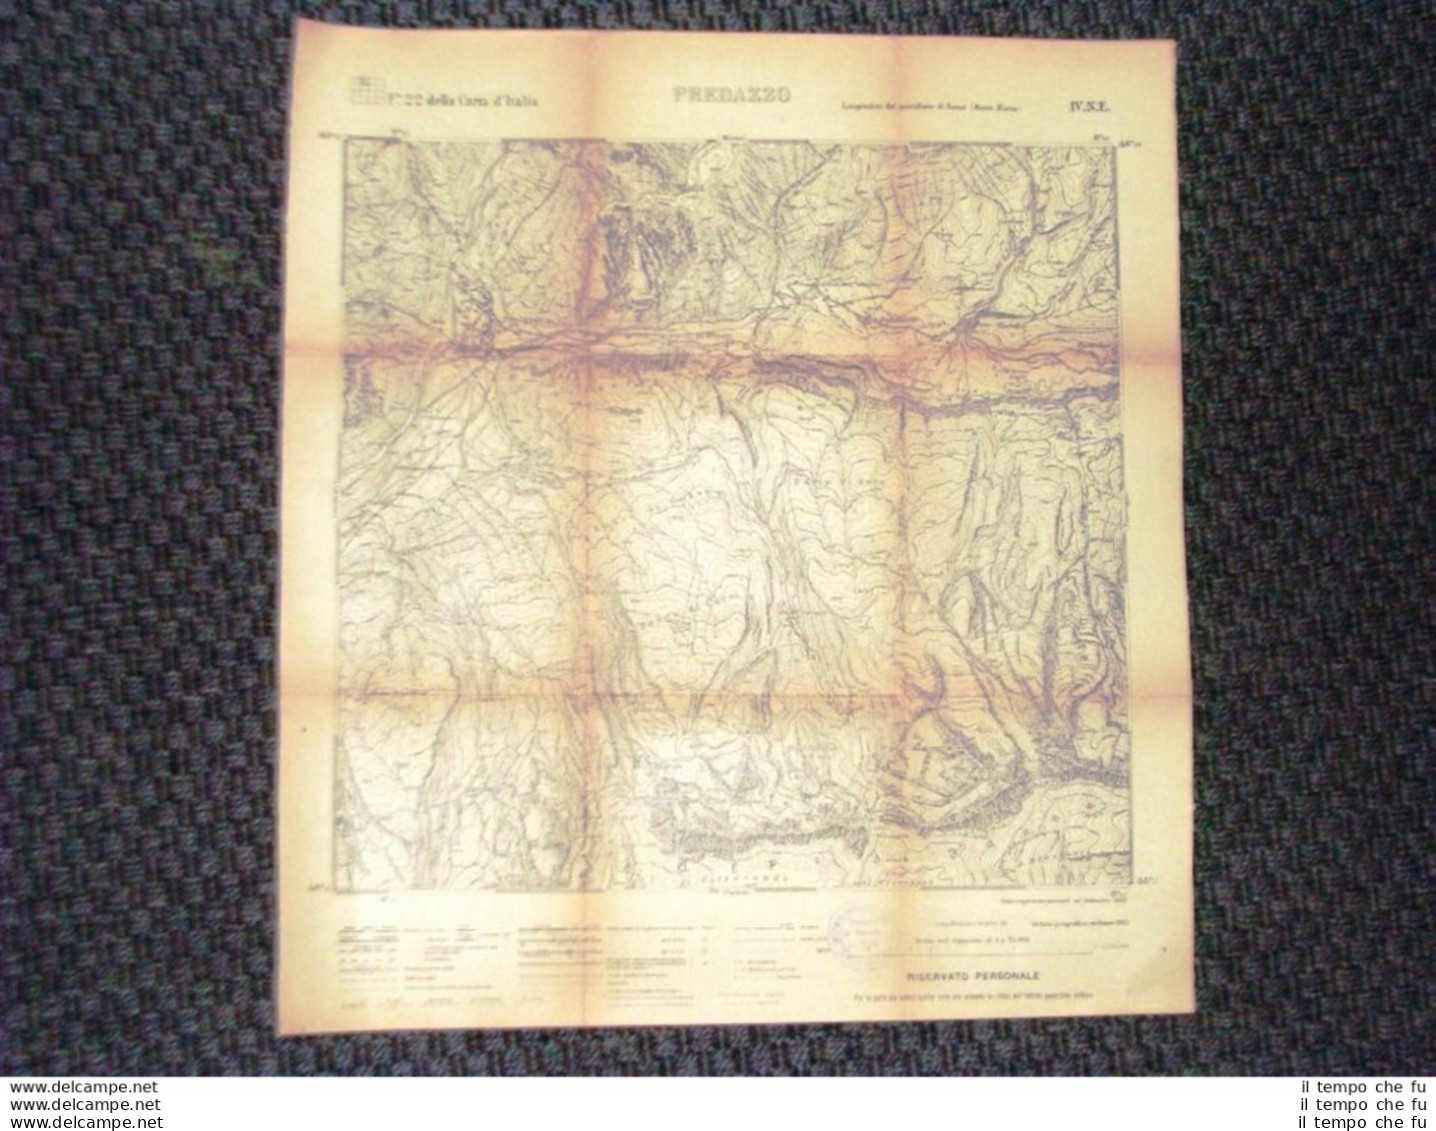 Grande Carta Topografica Predazzo O Pardatsch Trentino Dettagliatissima I.G.M. - Cartes Géographiques